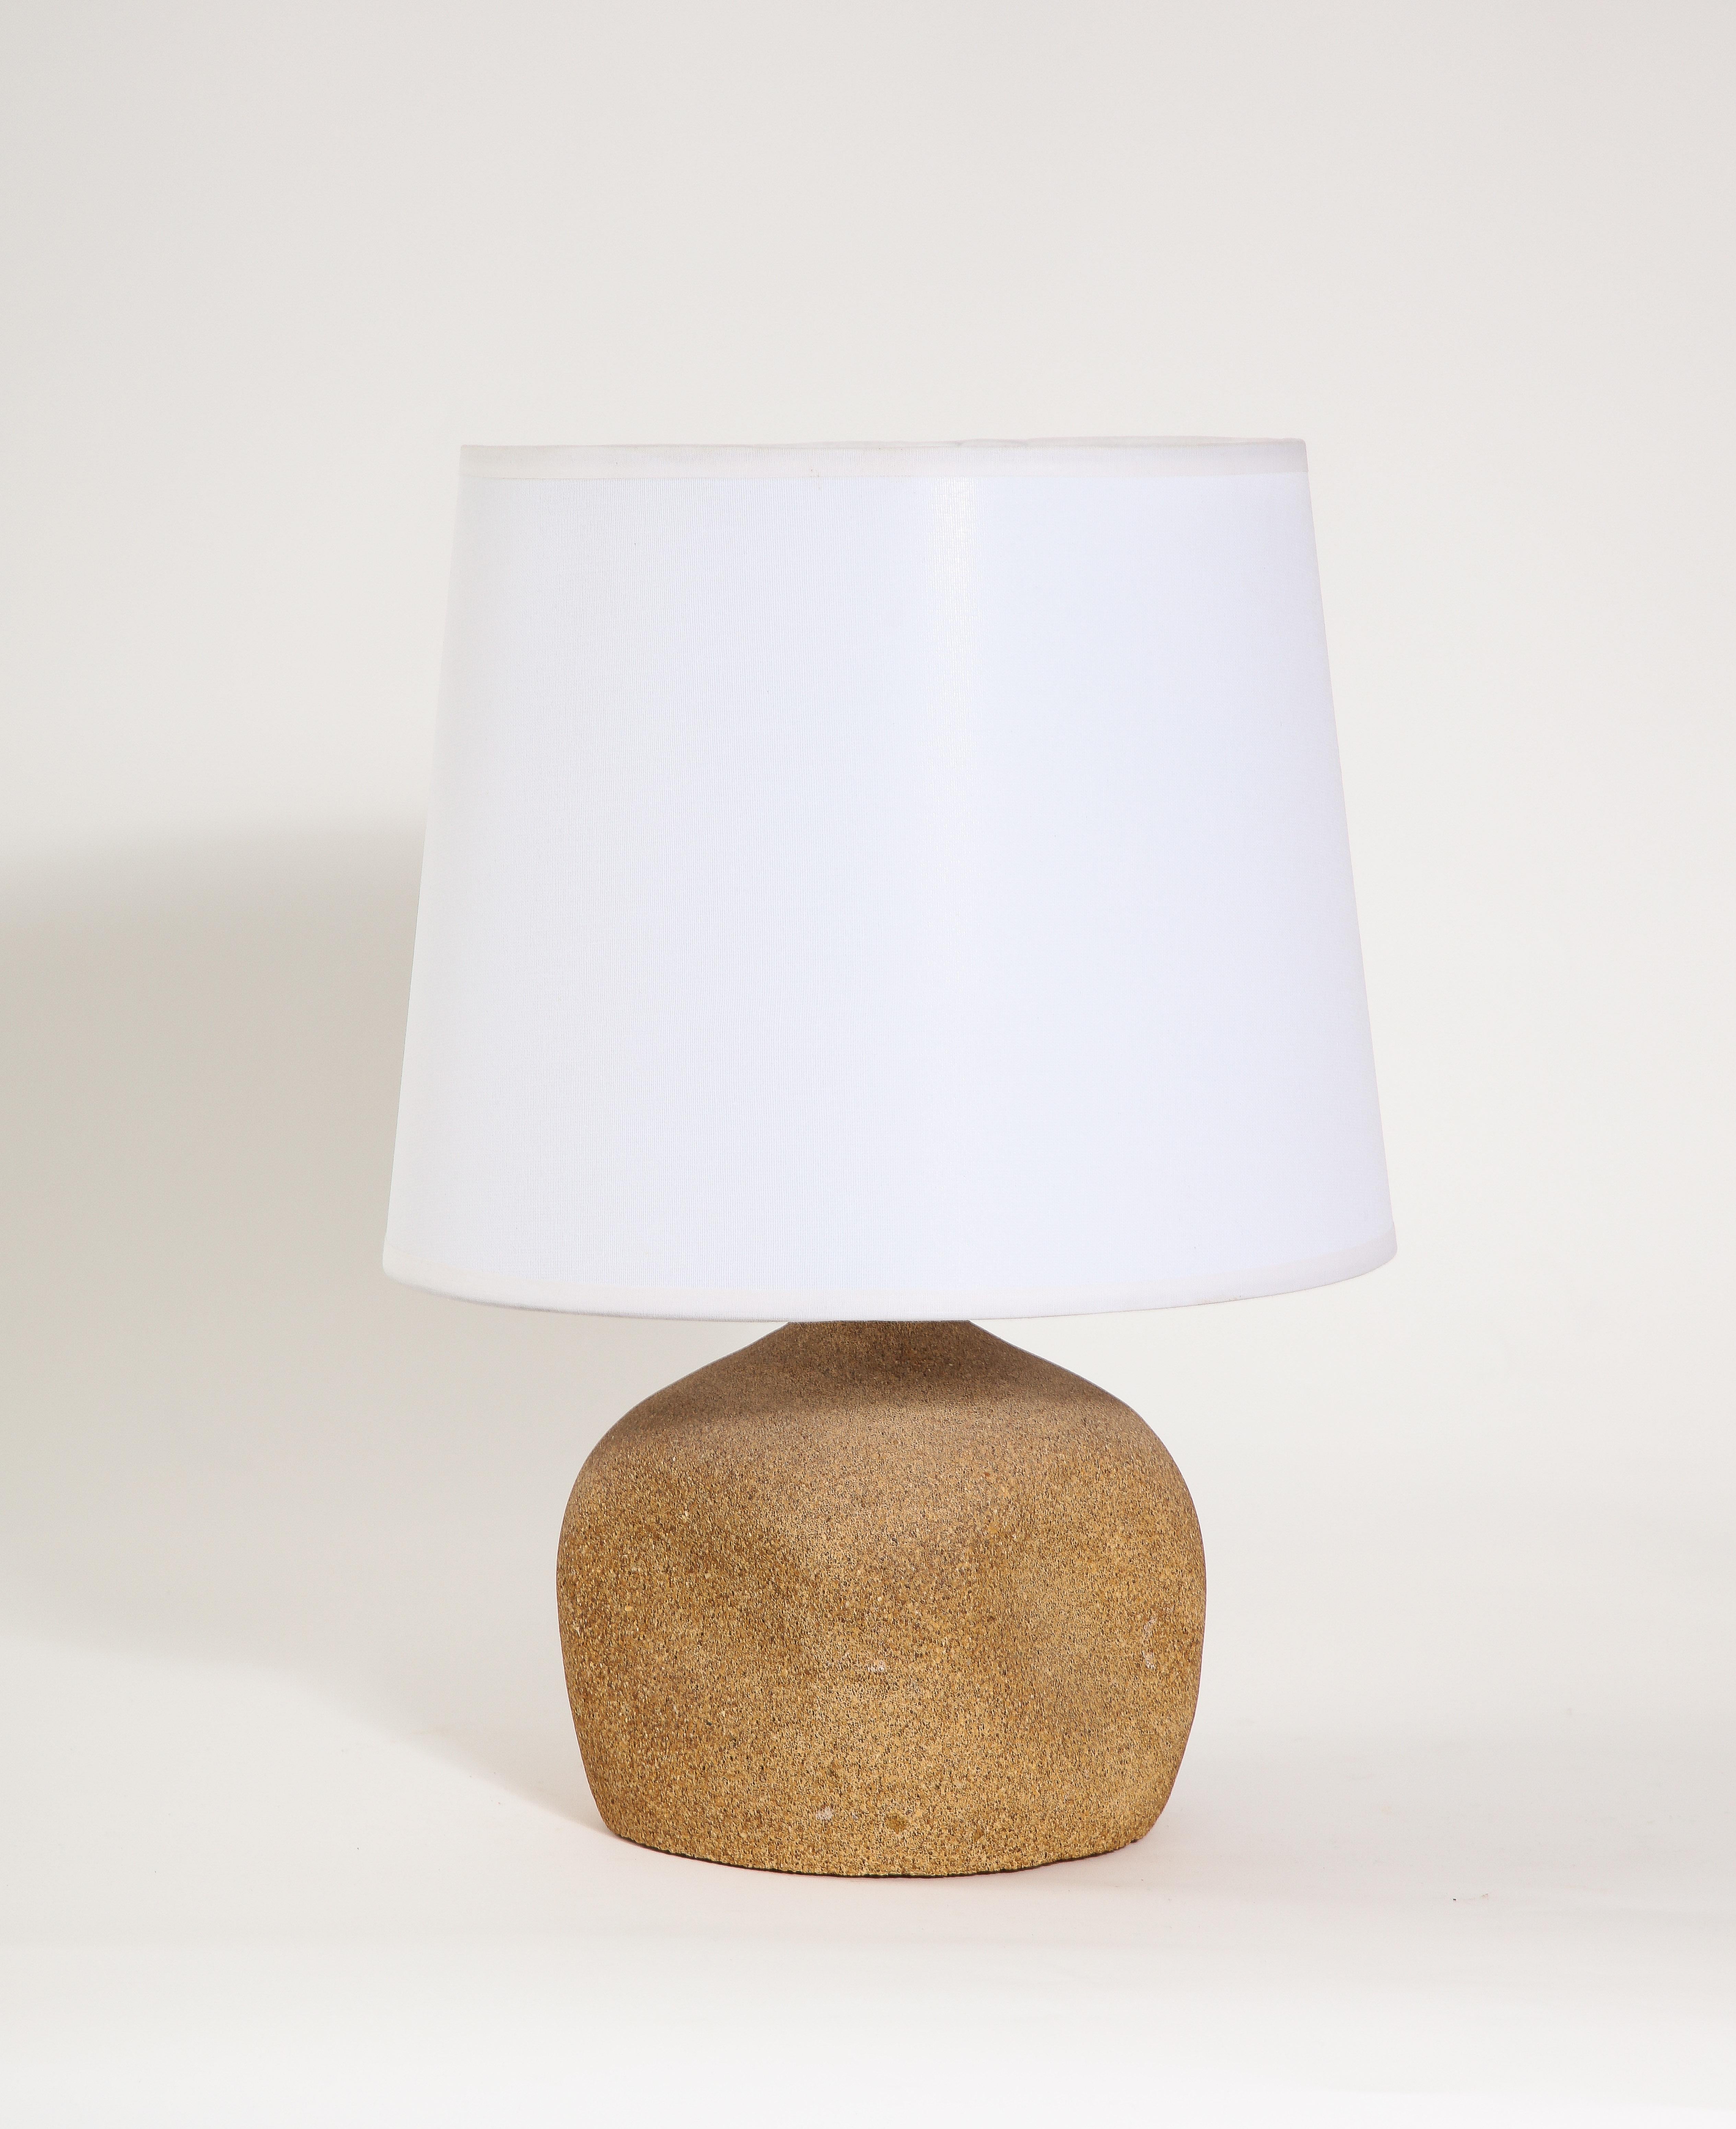 Lampe de table en faïence carrée arrondie avec un motif en creux

10x6x6 Base seule